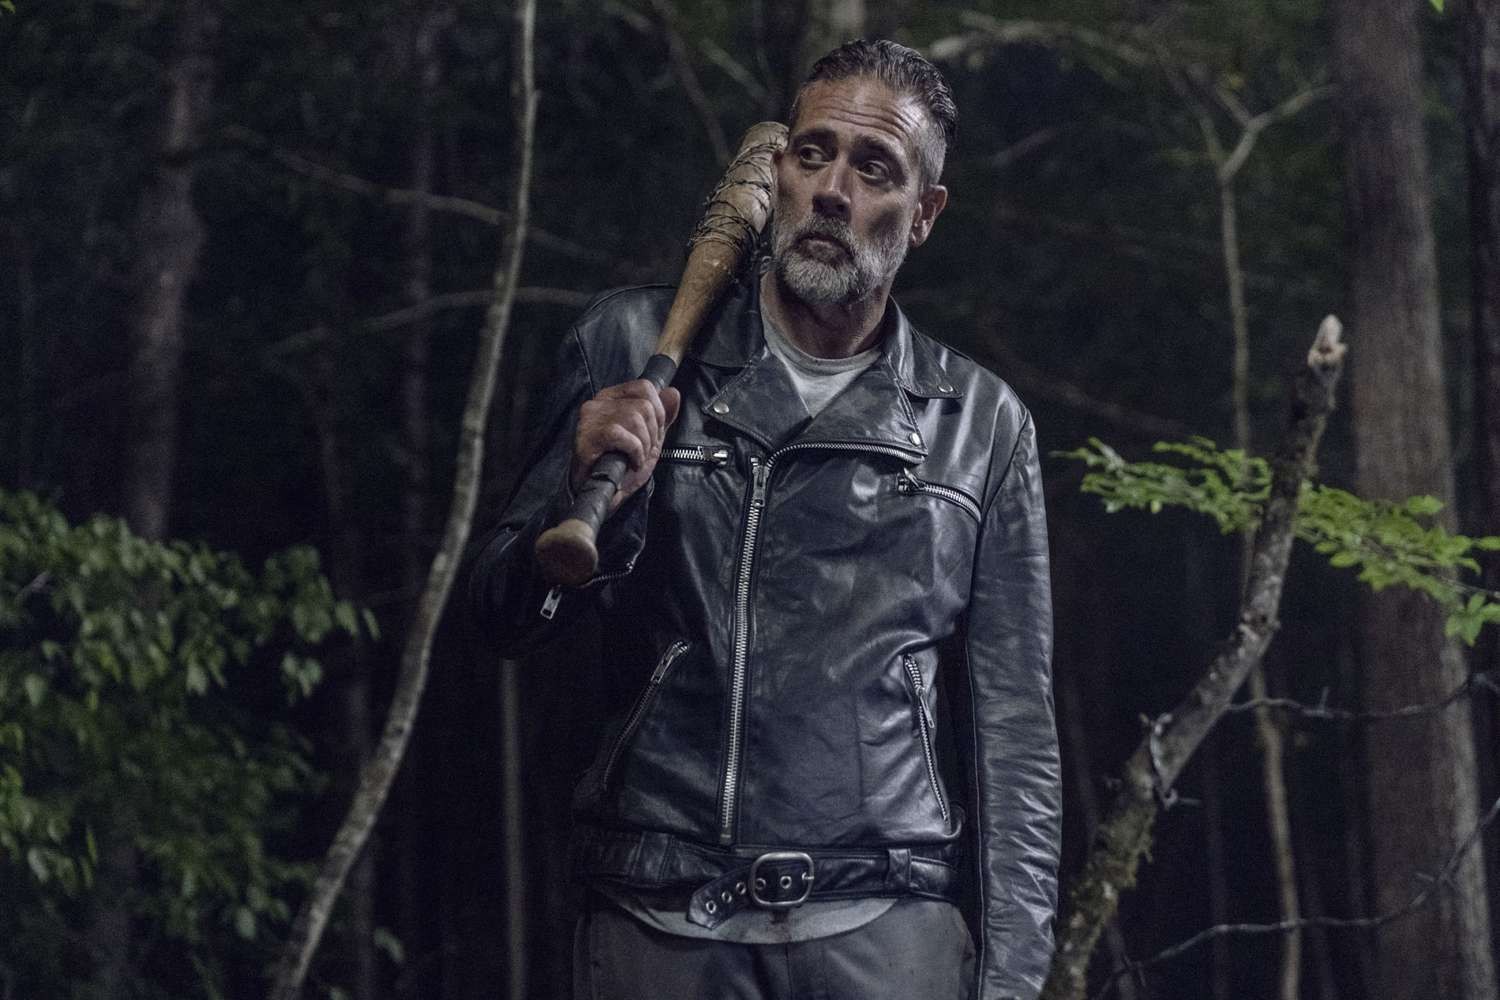 Negan from The Walking Dead